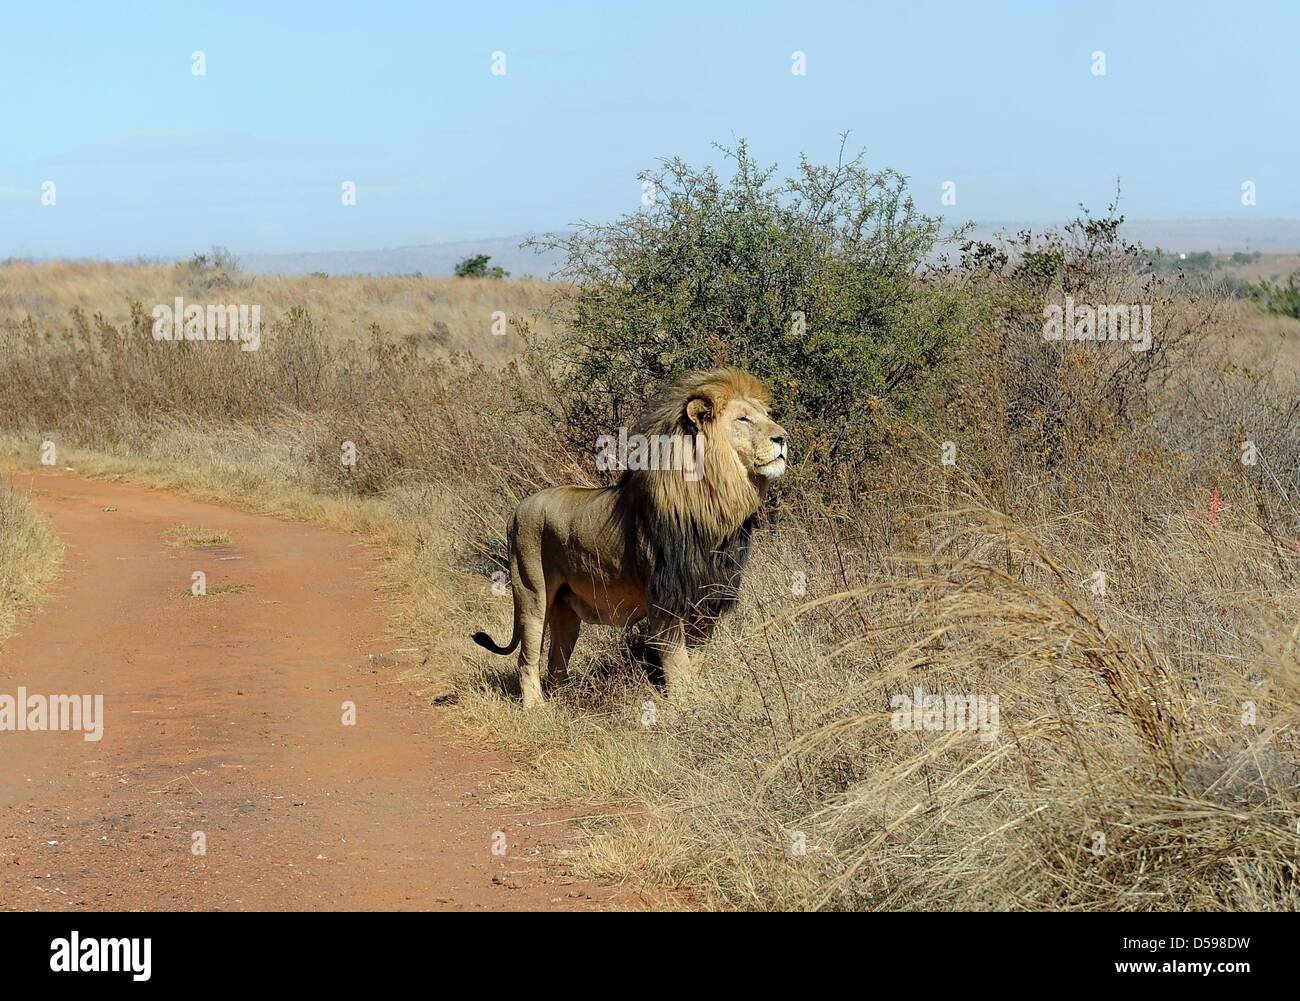 Un leone sta nell'erba a Rhino e Lion Riserva Naturale, circa quaranta chilometri a nord di Johannesburg, Sud Africa 15 Giugno 2010. La riserva è l'habitat di rinoceronti, leoni, bufali, ippopotami e altri animali domiciliato in Sud Africa. Foto: Achim Scheidemann Foto Stock